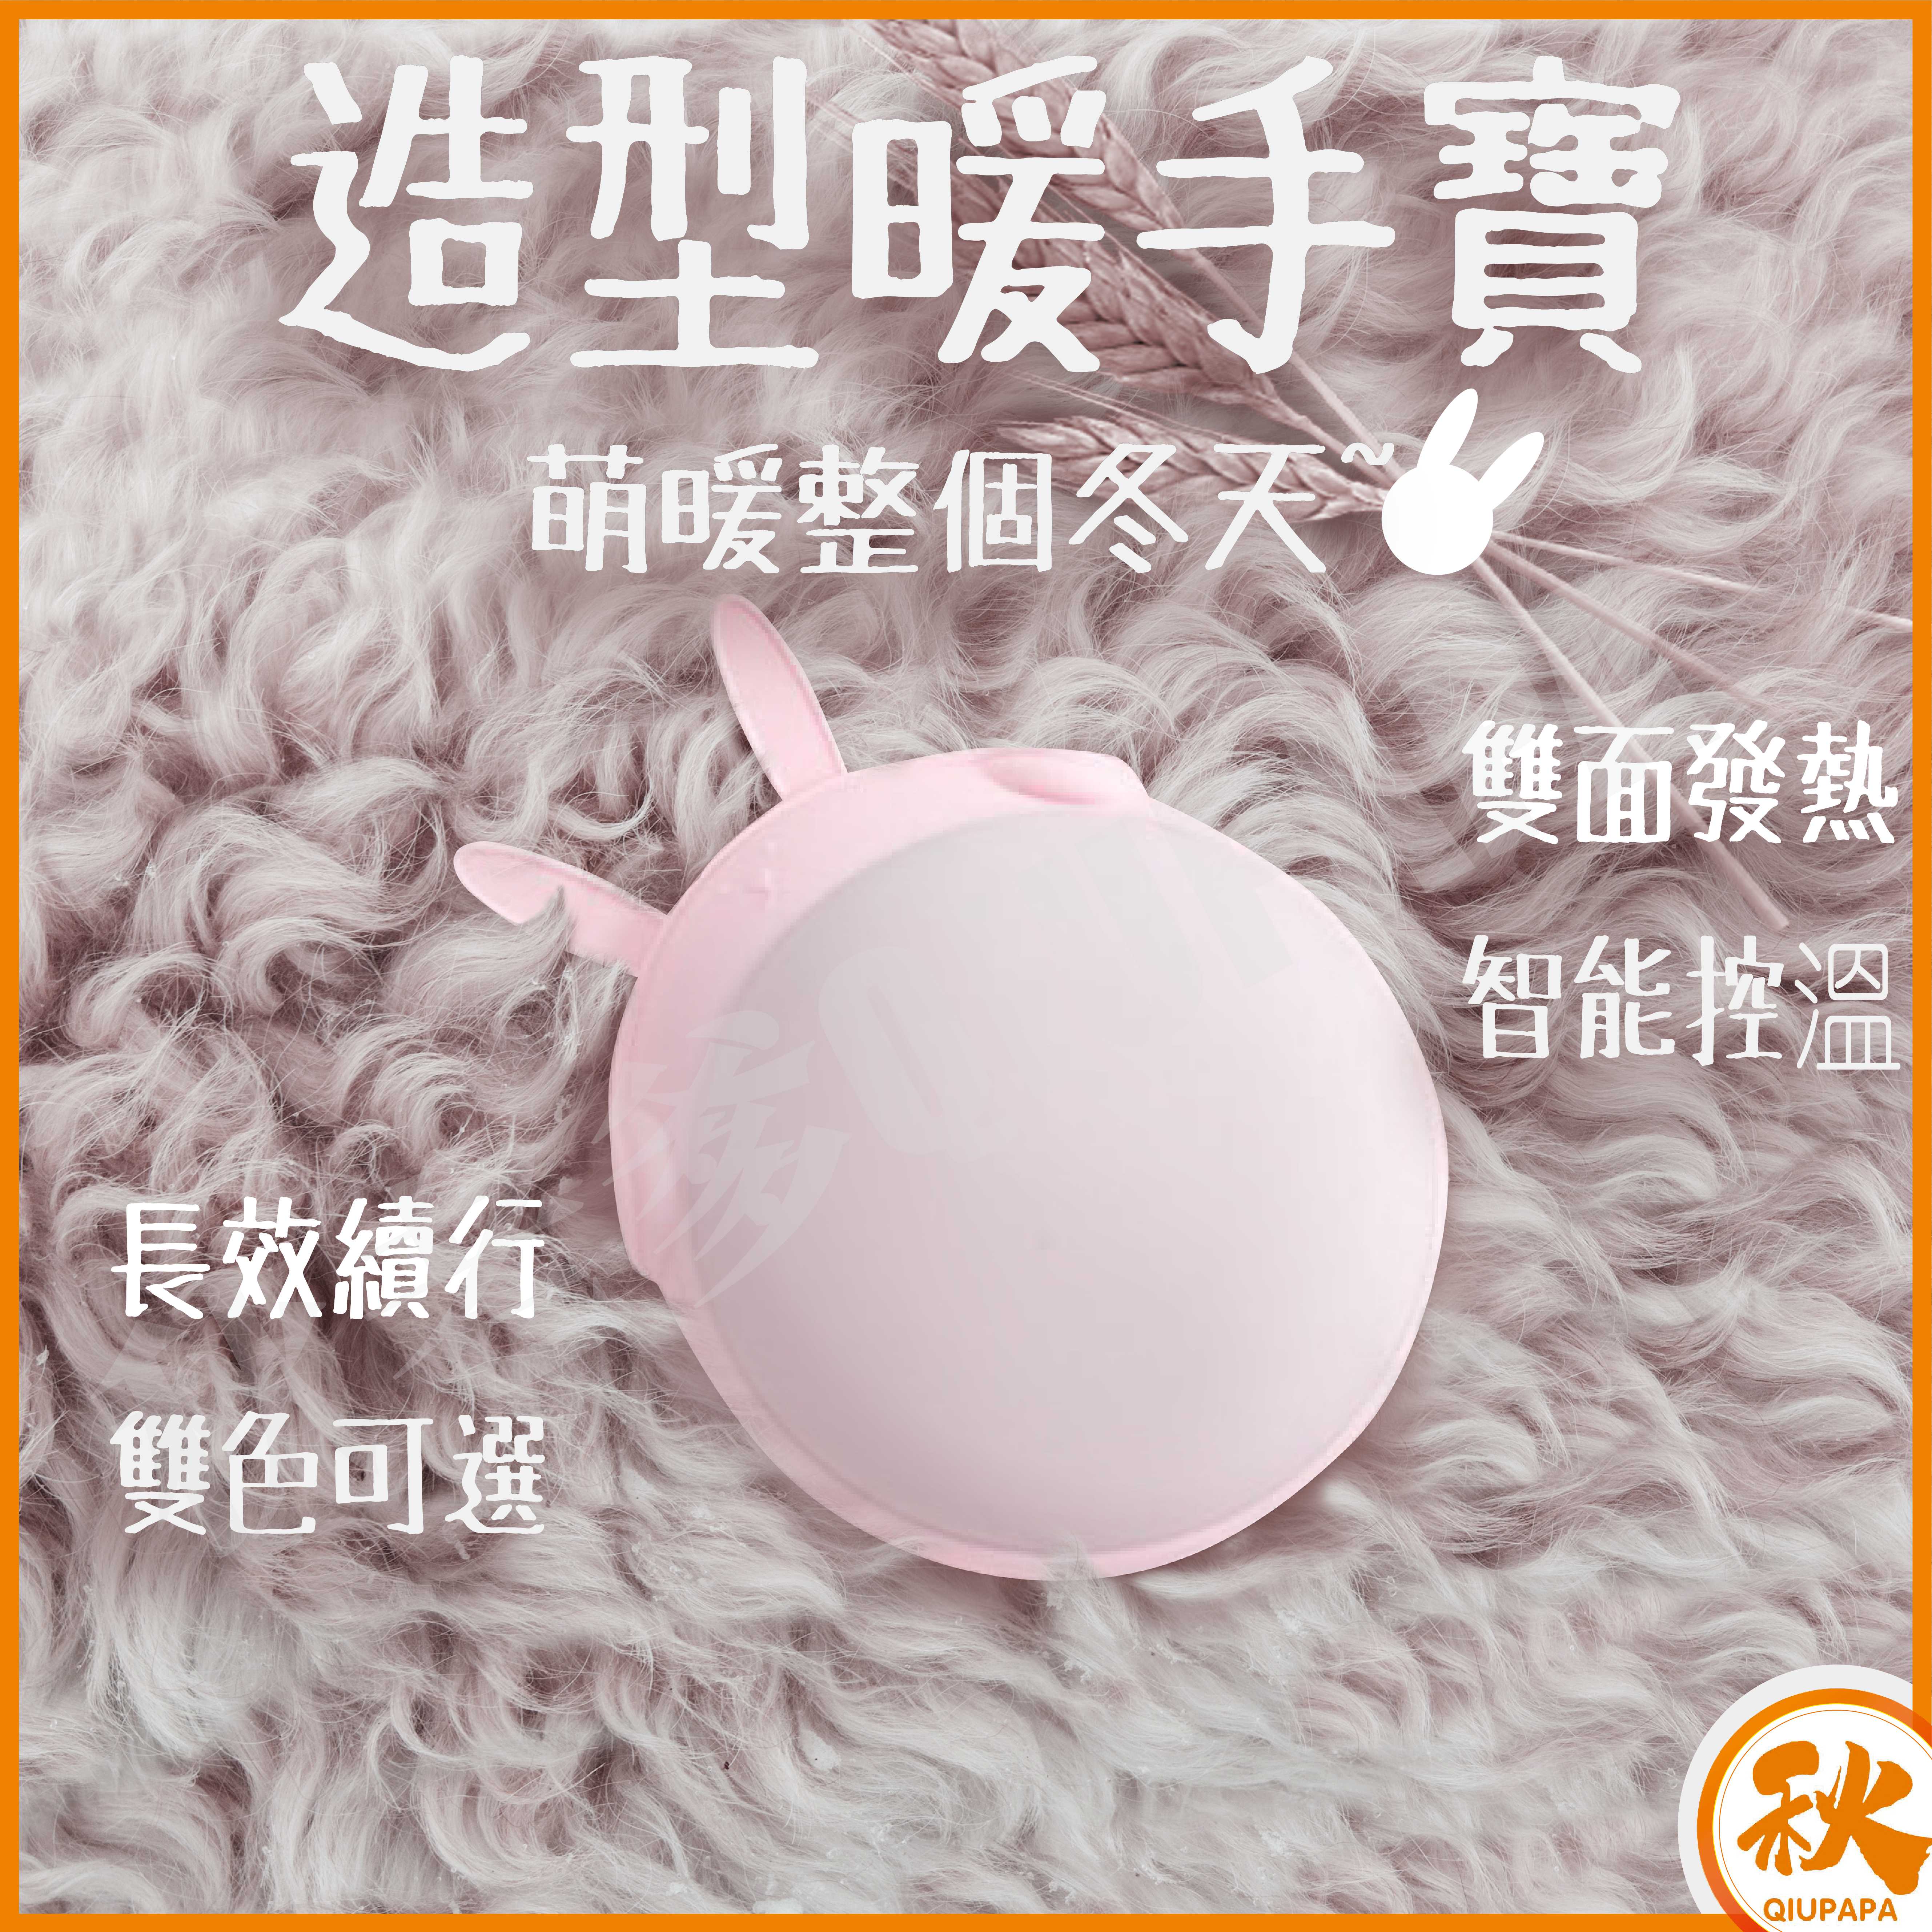 台灣現貨 QIU 暖手寶 生理期USB暖暖包 經痛熱敷 暖手包 萌耳朵可愛幸運石造型 聖誕節 交換禮物